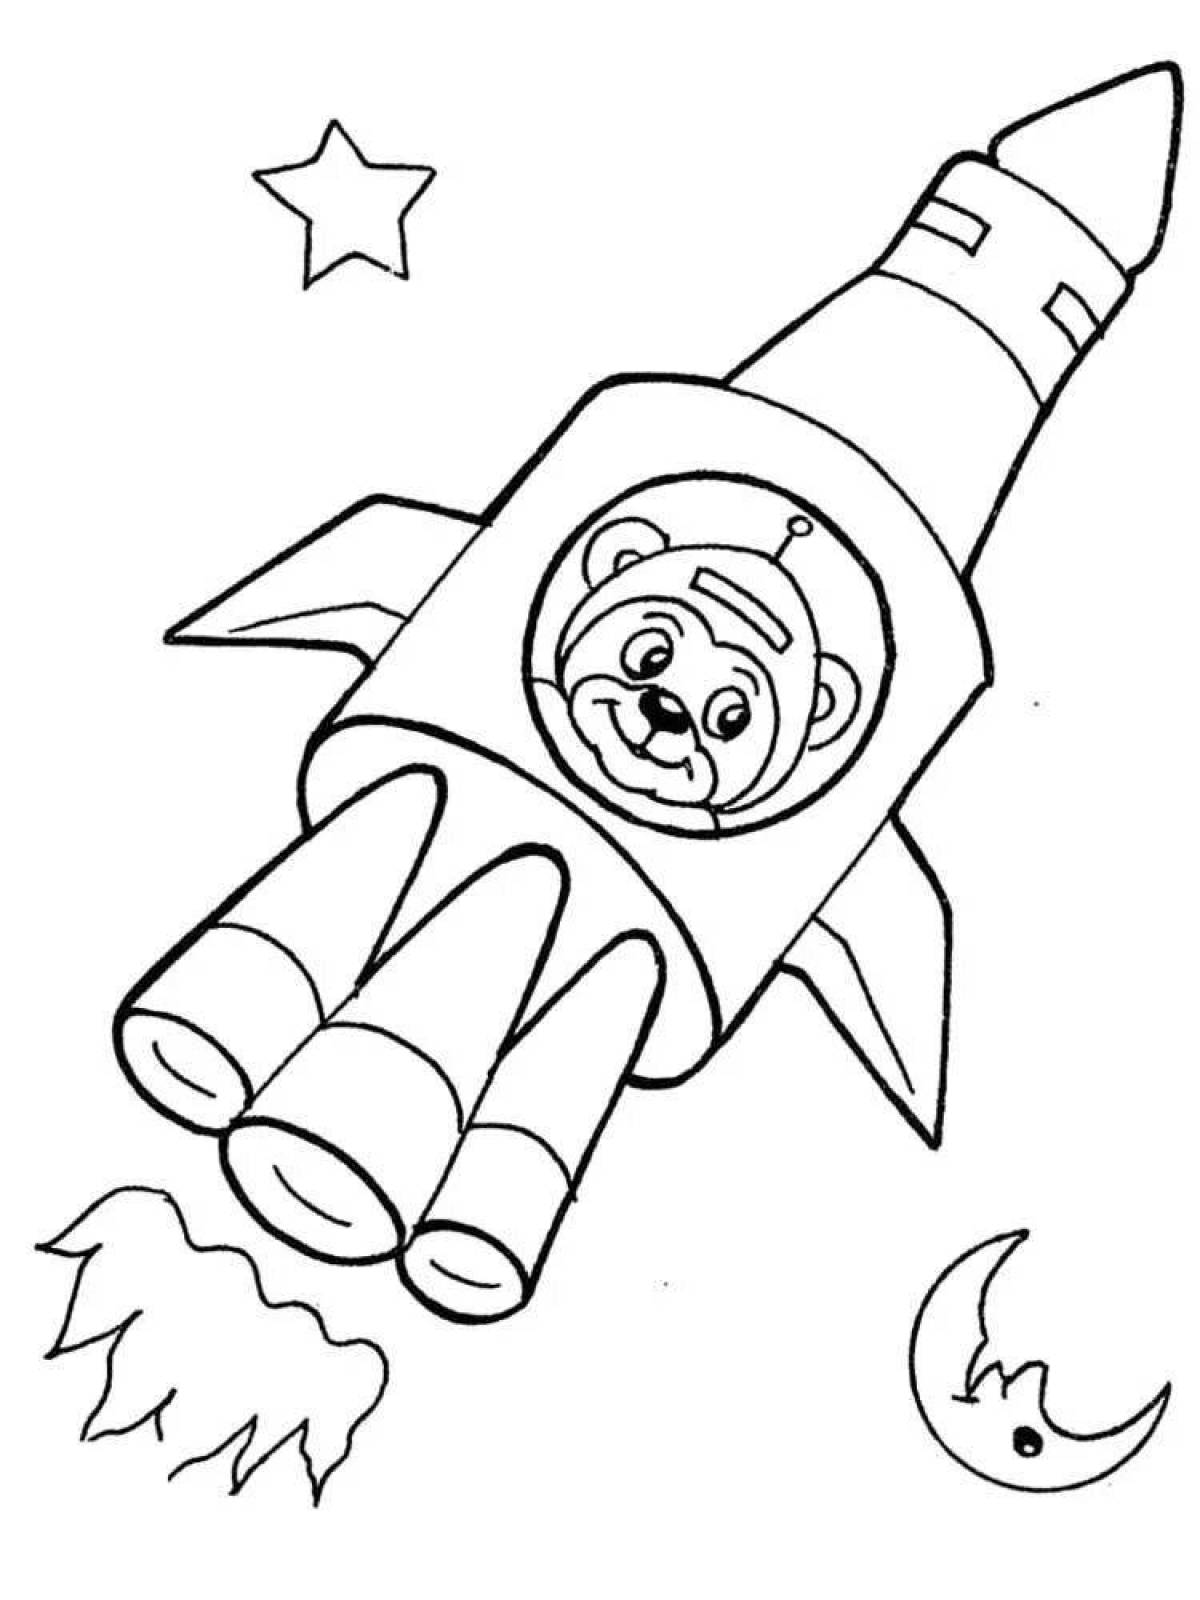 Привлекательная ракета-раскраска для детей